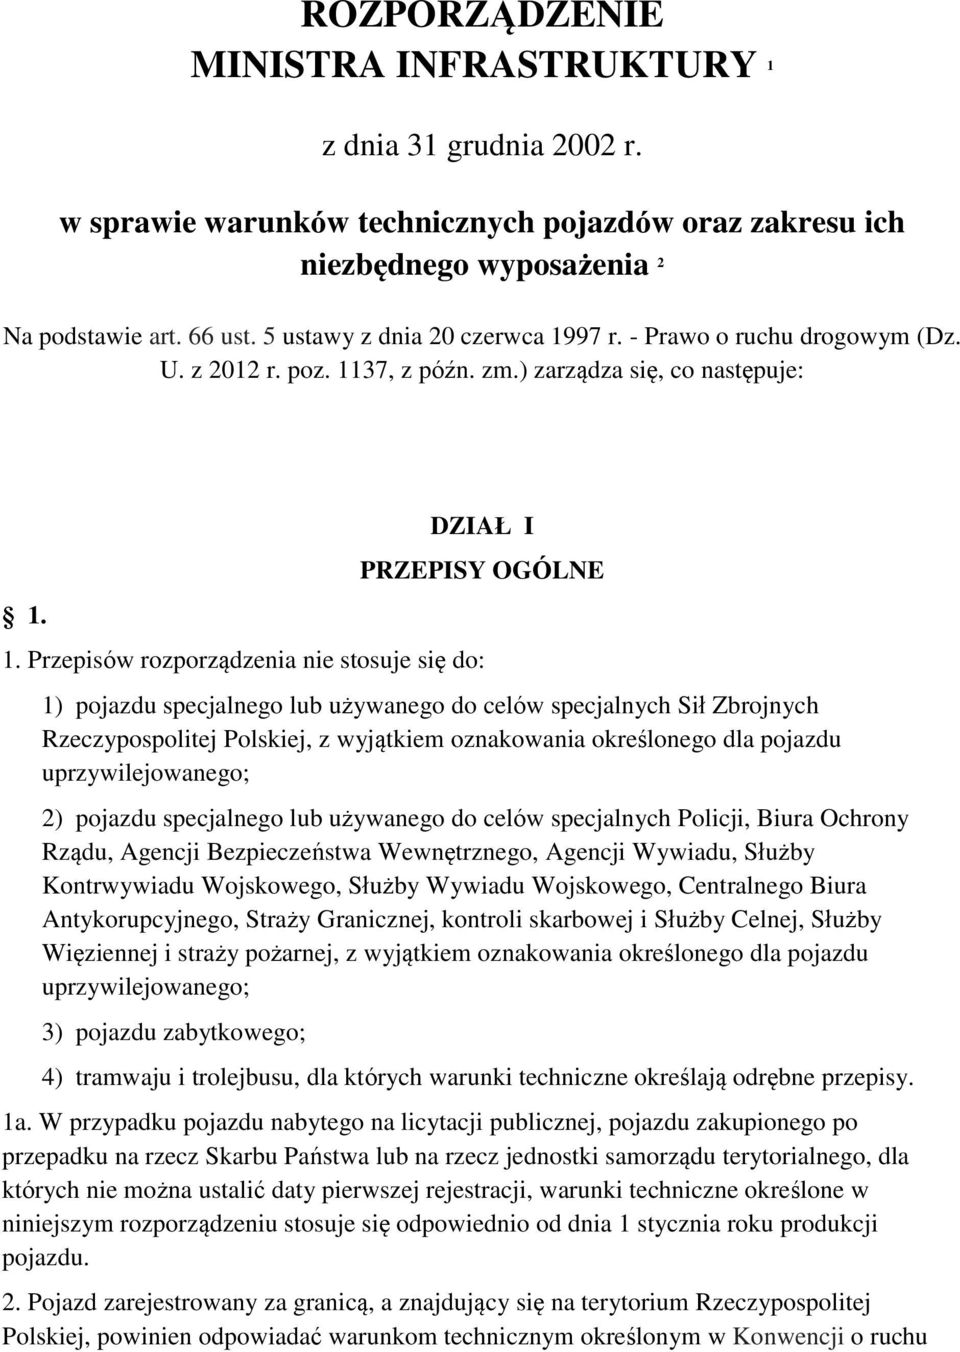 Przepisów rozporządzenia nie stosuje się do: 1) pojazdu specjalnego lub używanego do celów specjalnych Sił Zbrojnych Rzeczypospolitej Polskiej, z wyjątkiem oznakowania określonego dla pojazdu